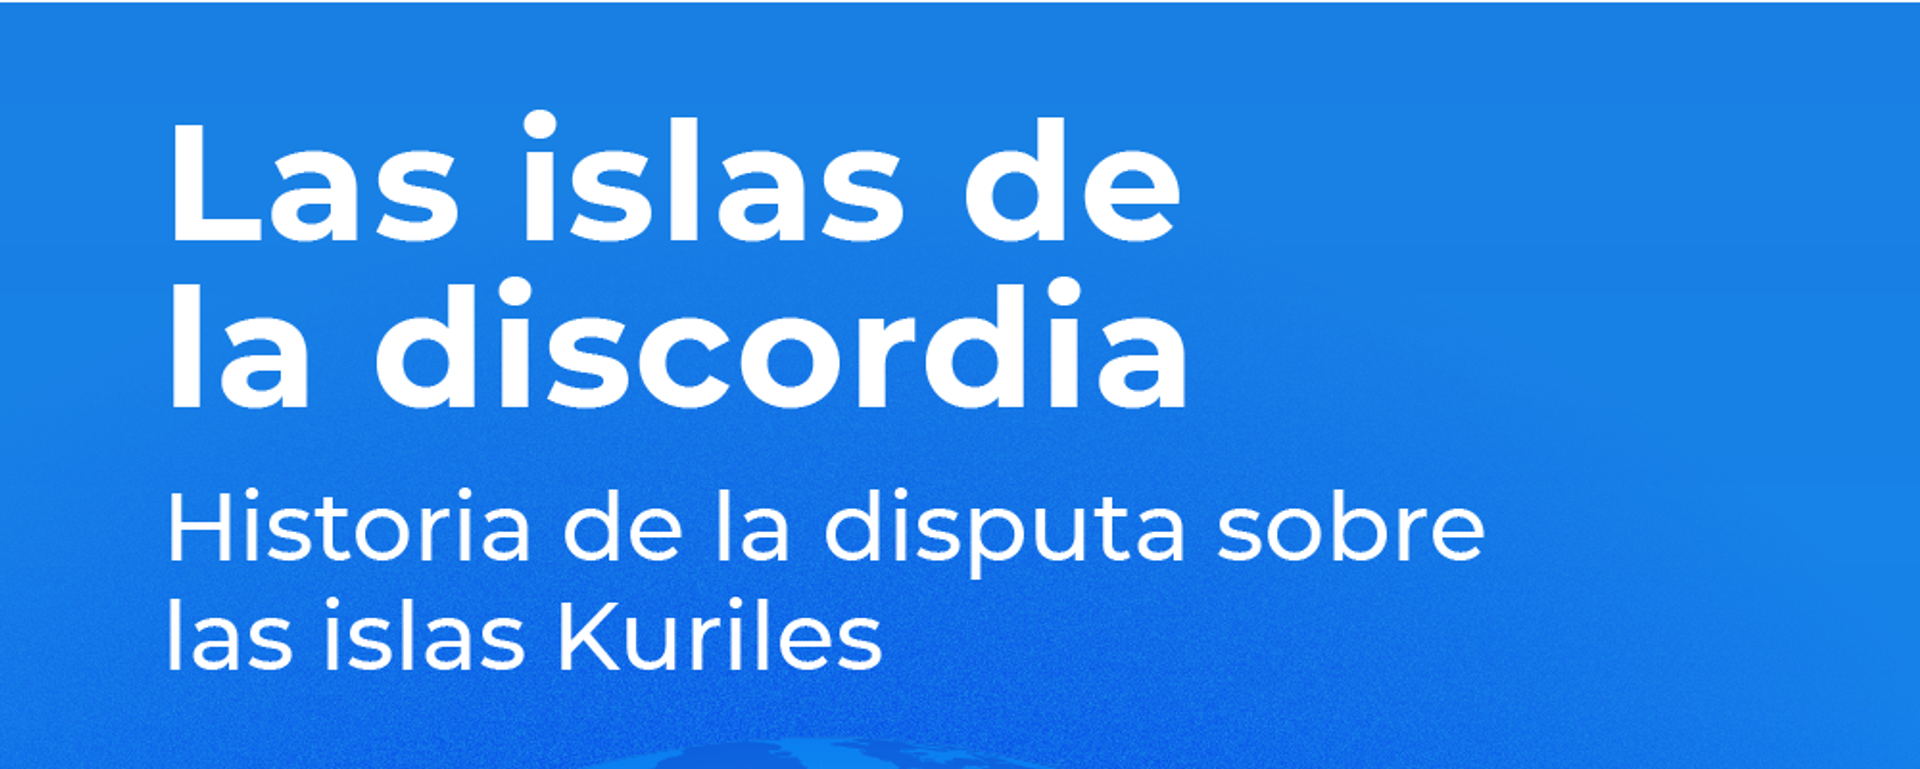 Las islas de la discordia - Sputnik Mundo, 1920, 15.02.2019